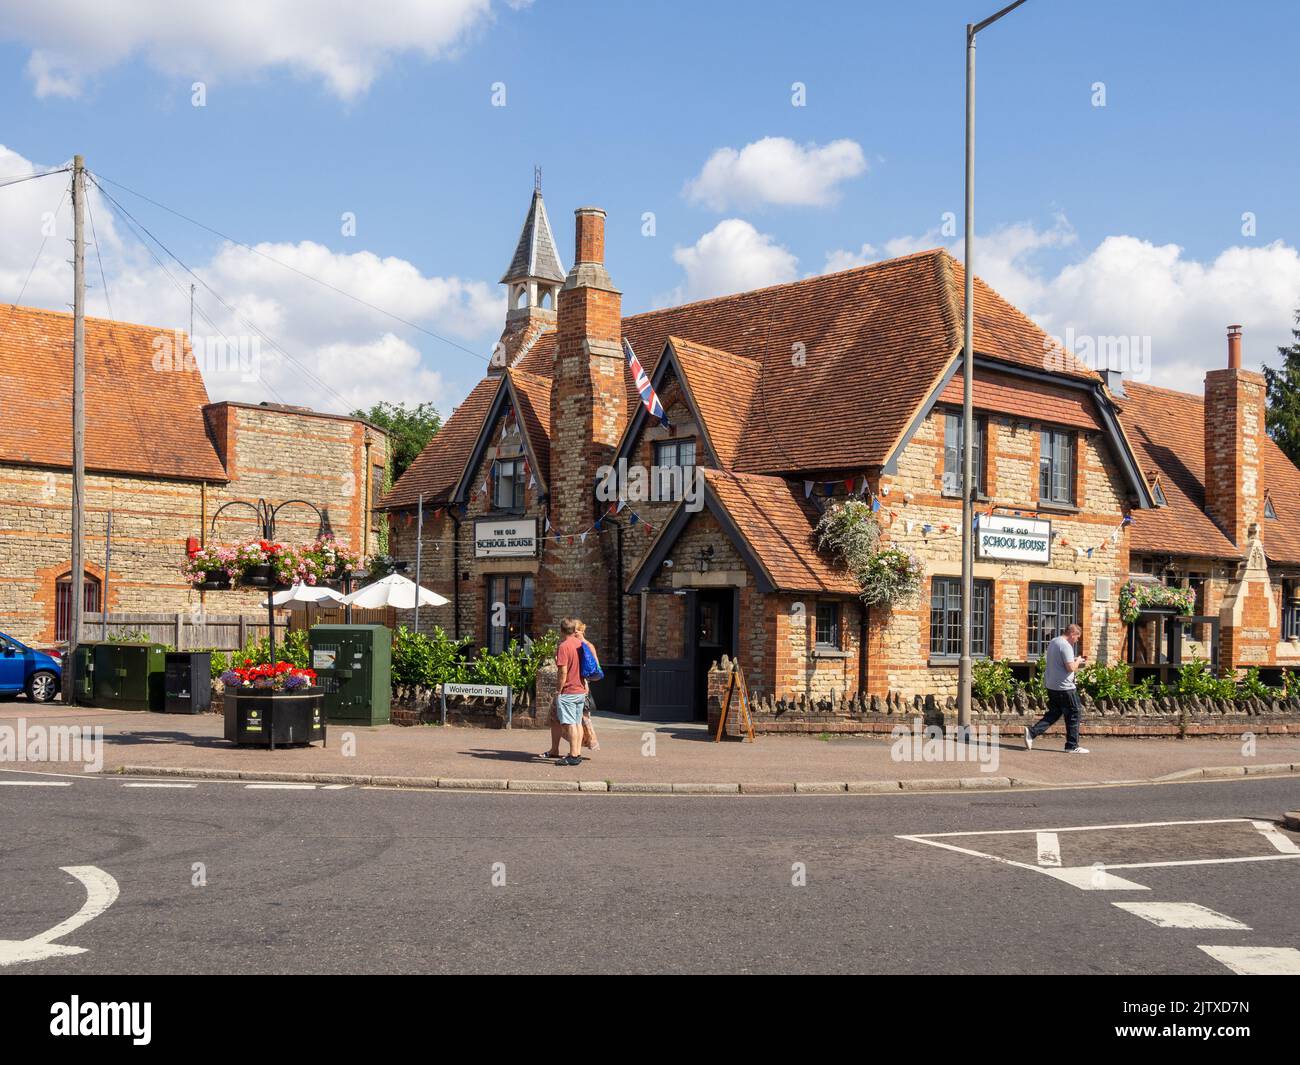 The Old School House pub, parte della catena Wells & Co, Stony Stratford, Buckinghamshire, Regno Unito; precedentemente noto come The Plough. Foto Stock